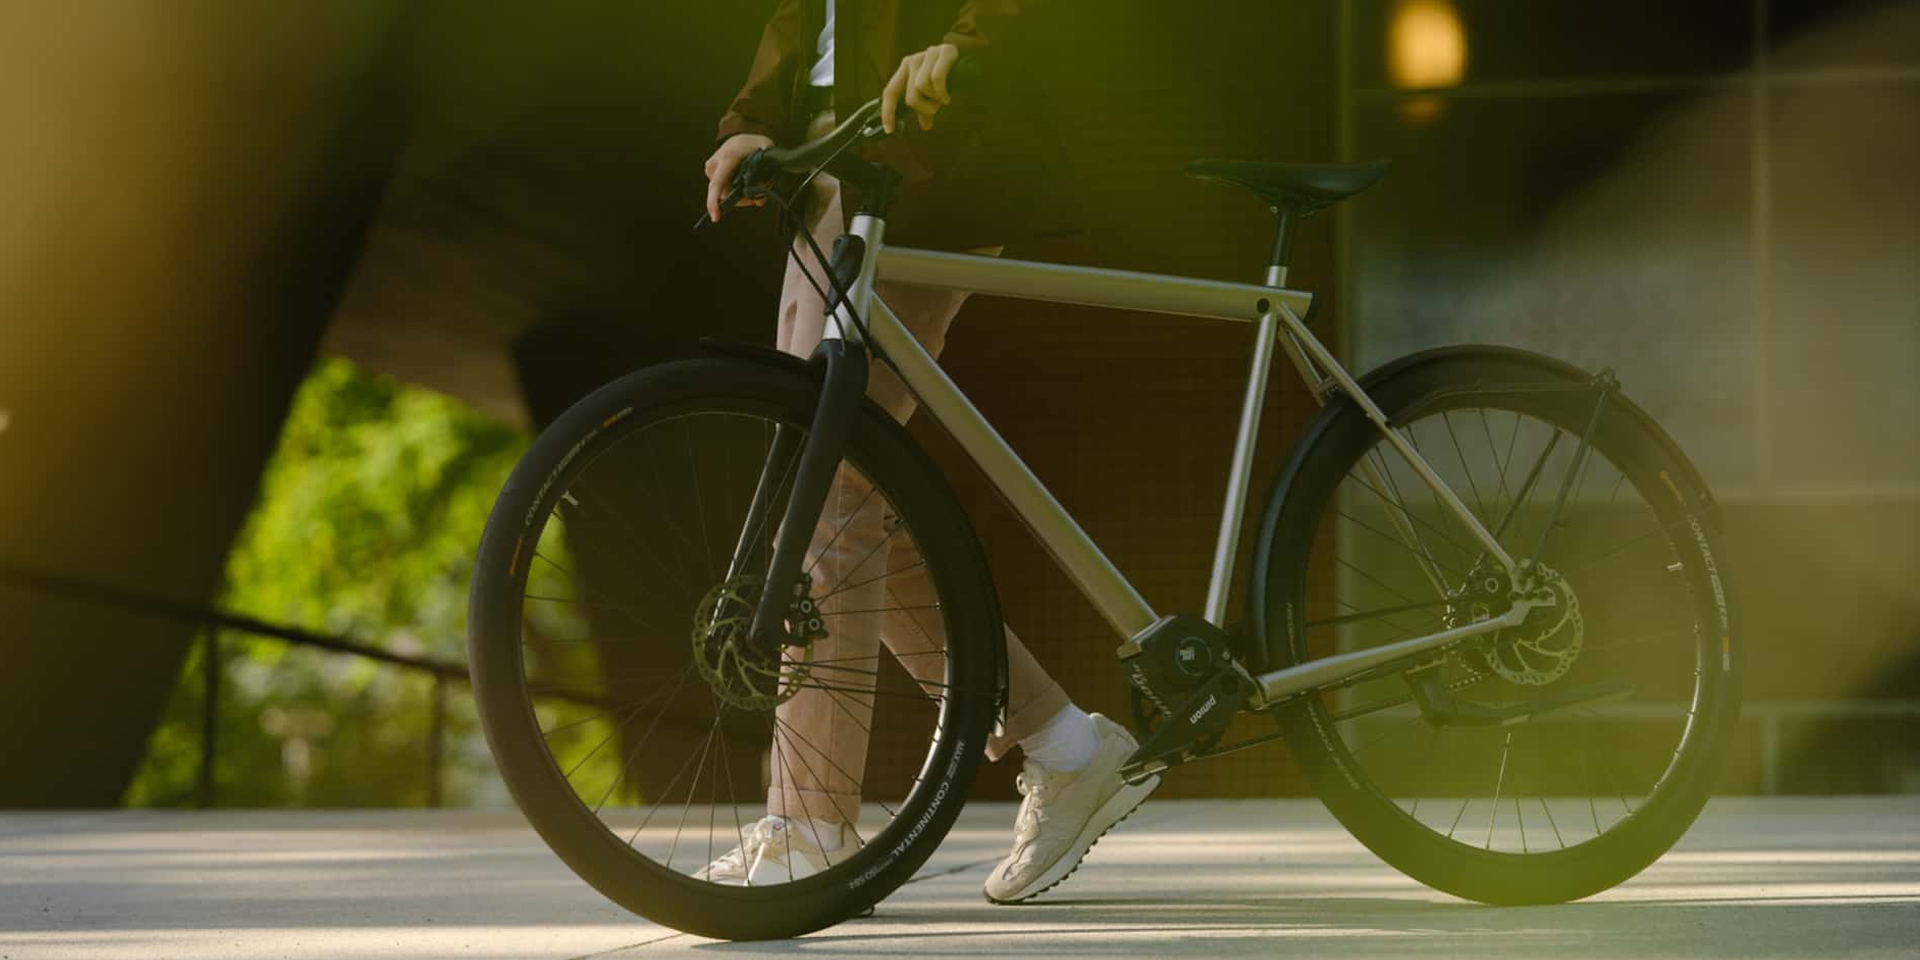 Geos E-Bike：250W馬達、350Wh電池、Gates碳纖維皮帶傳動、15公斤車重的極簡風格電動自行車！